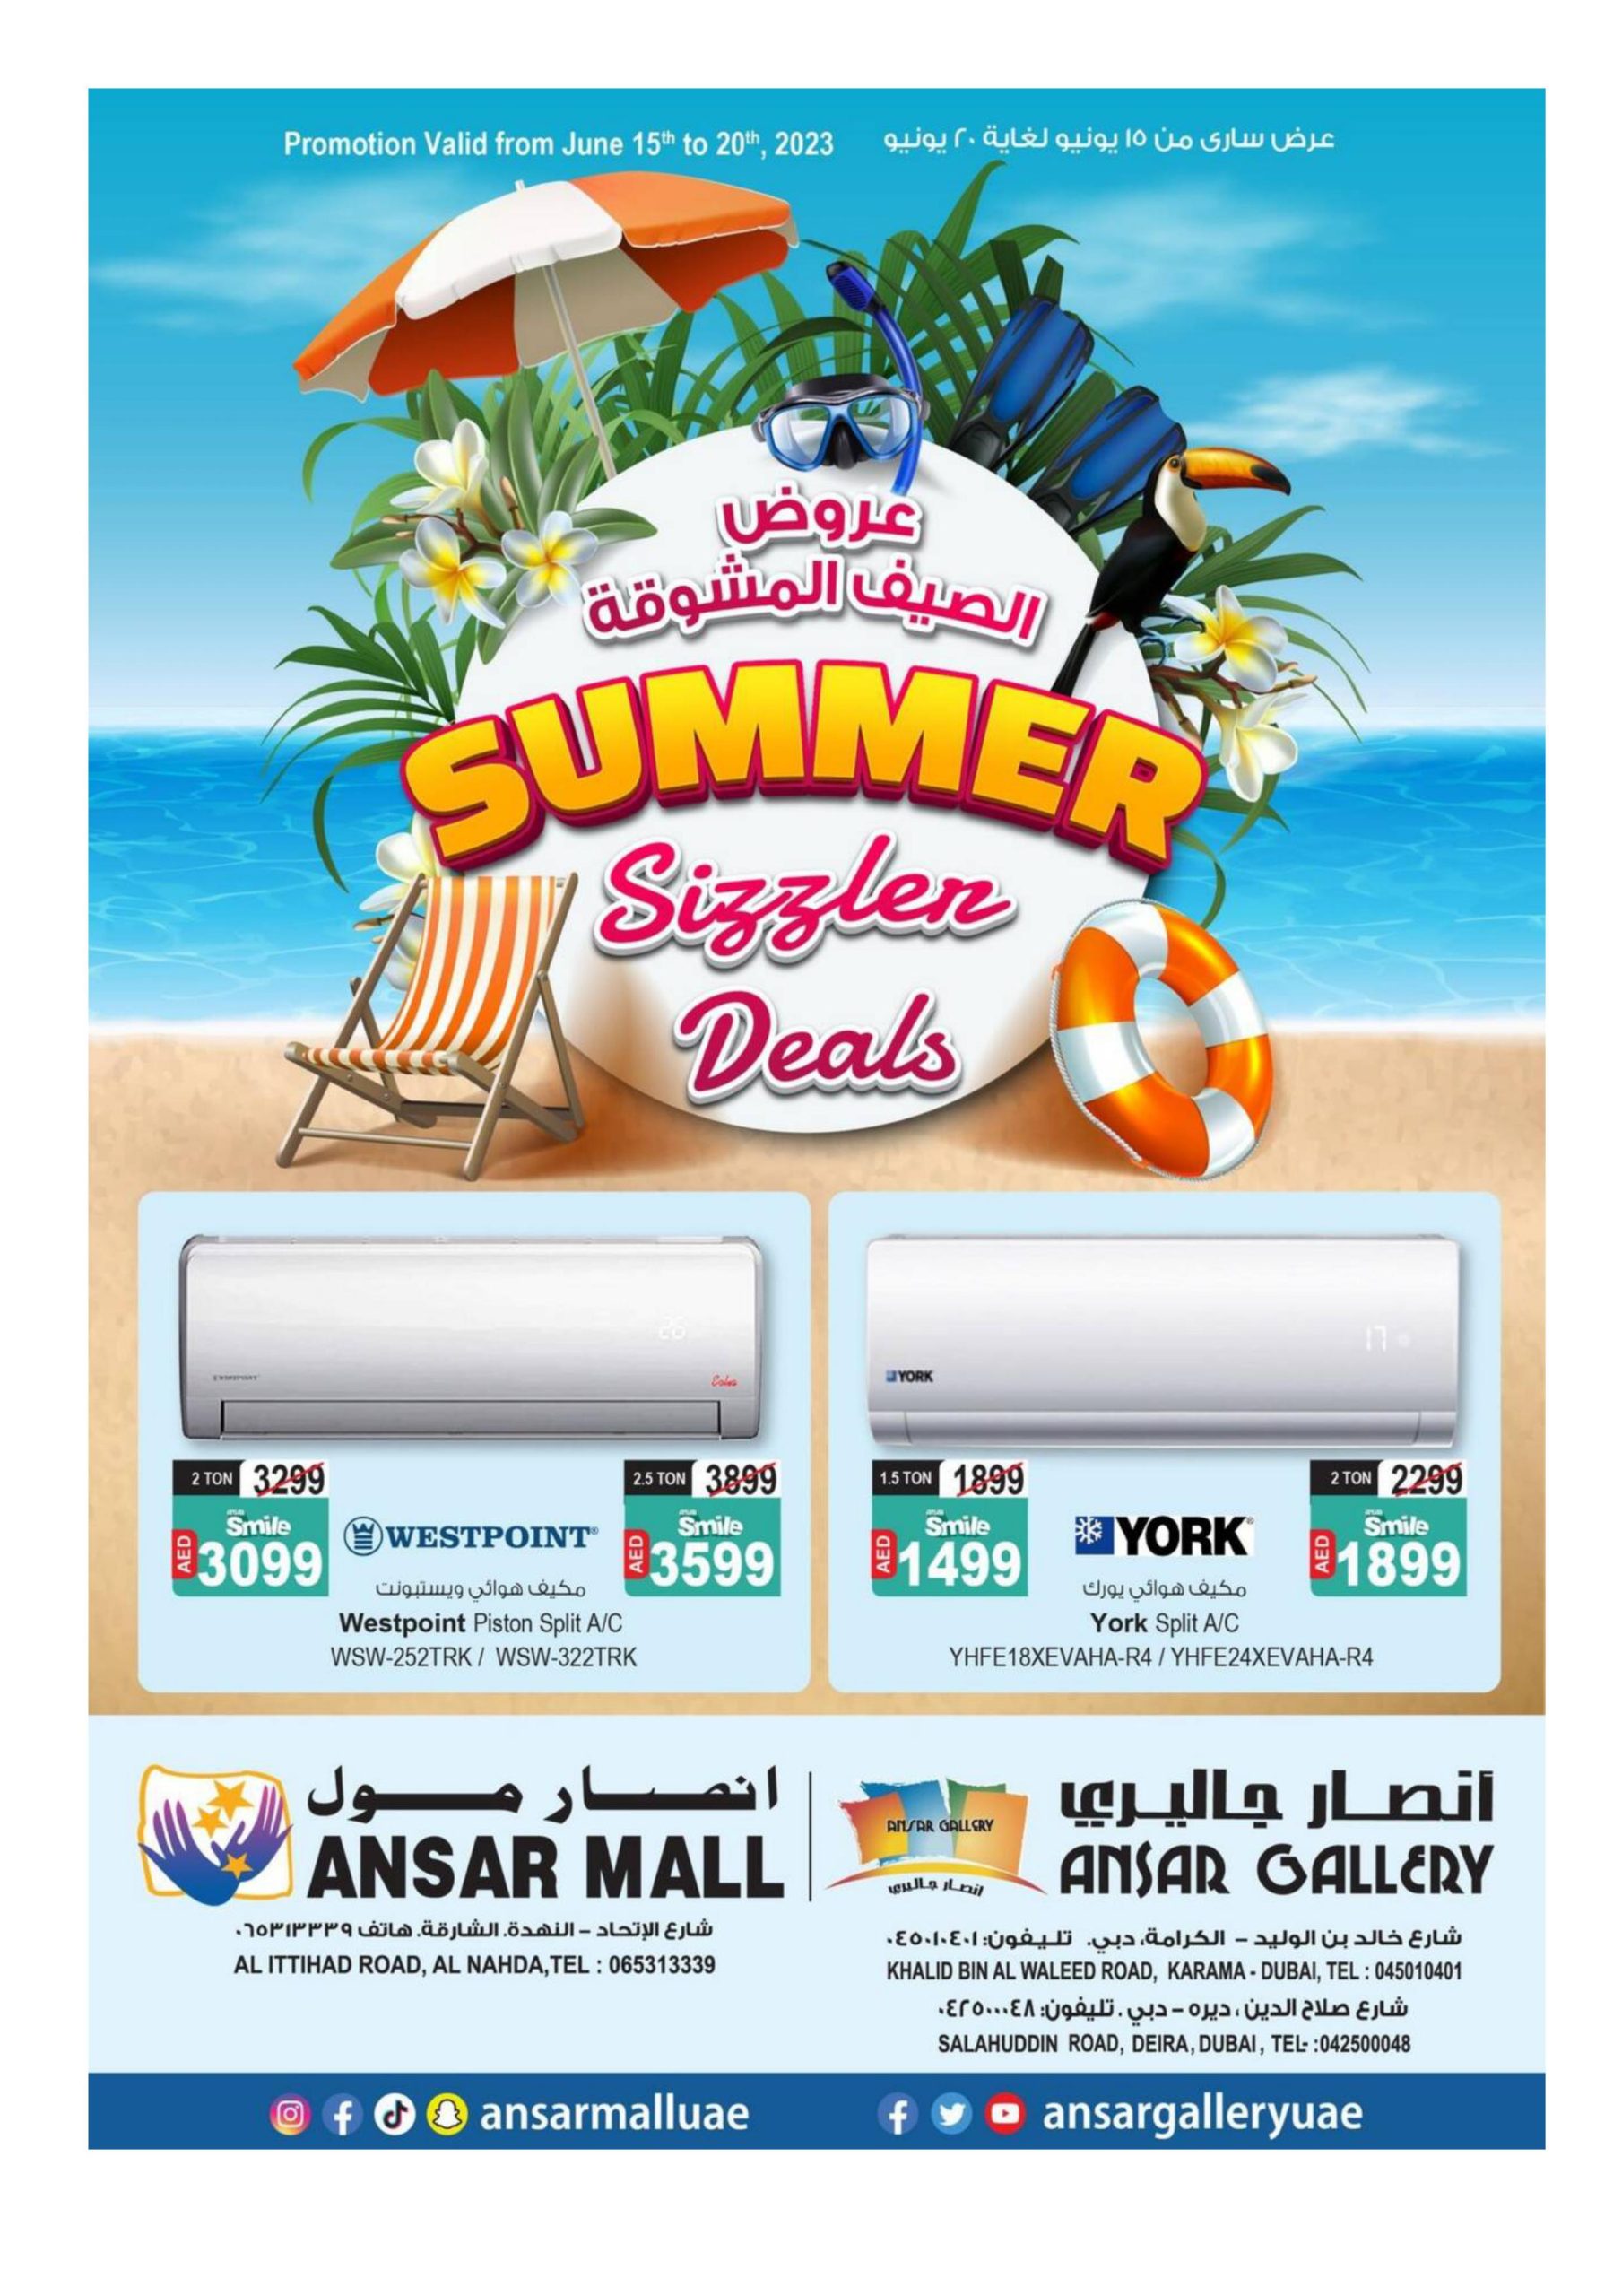 Ansar Gallery Summer Deals Offers